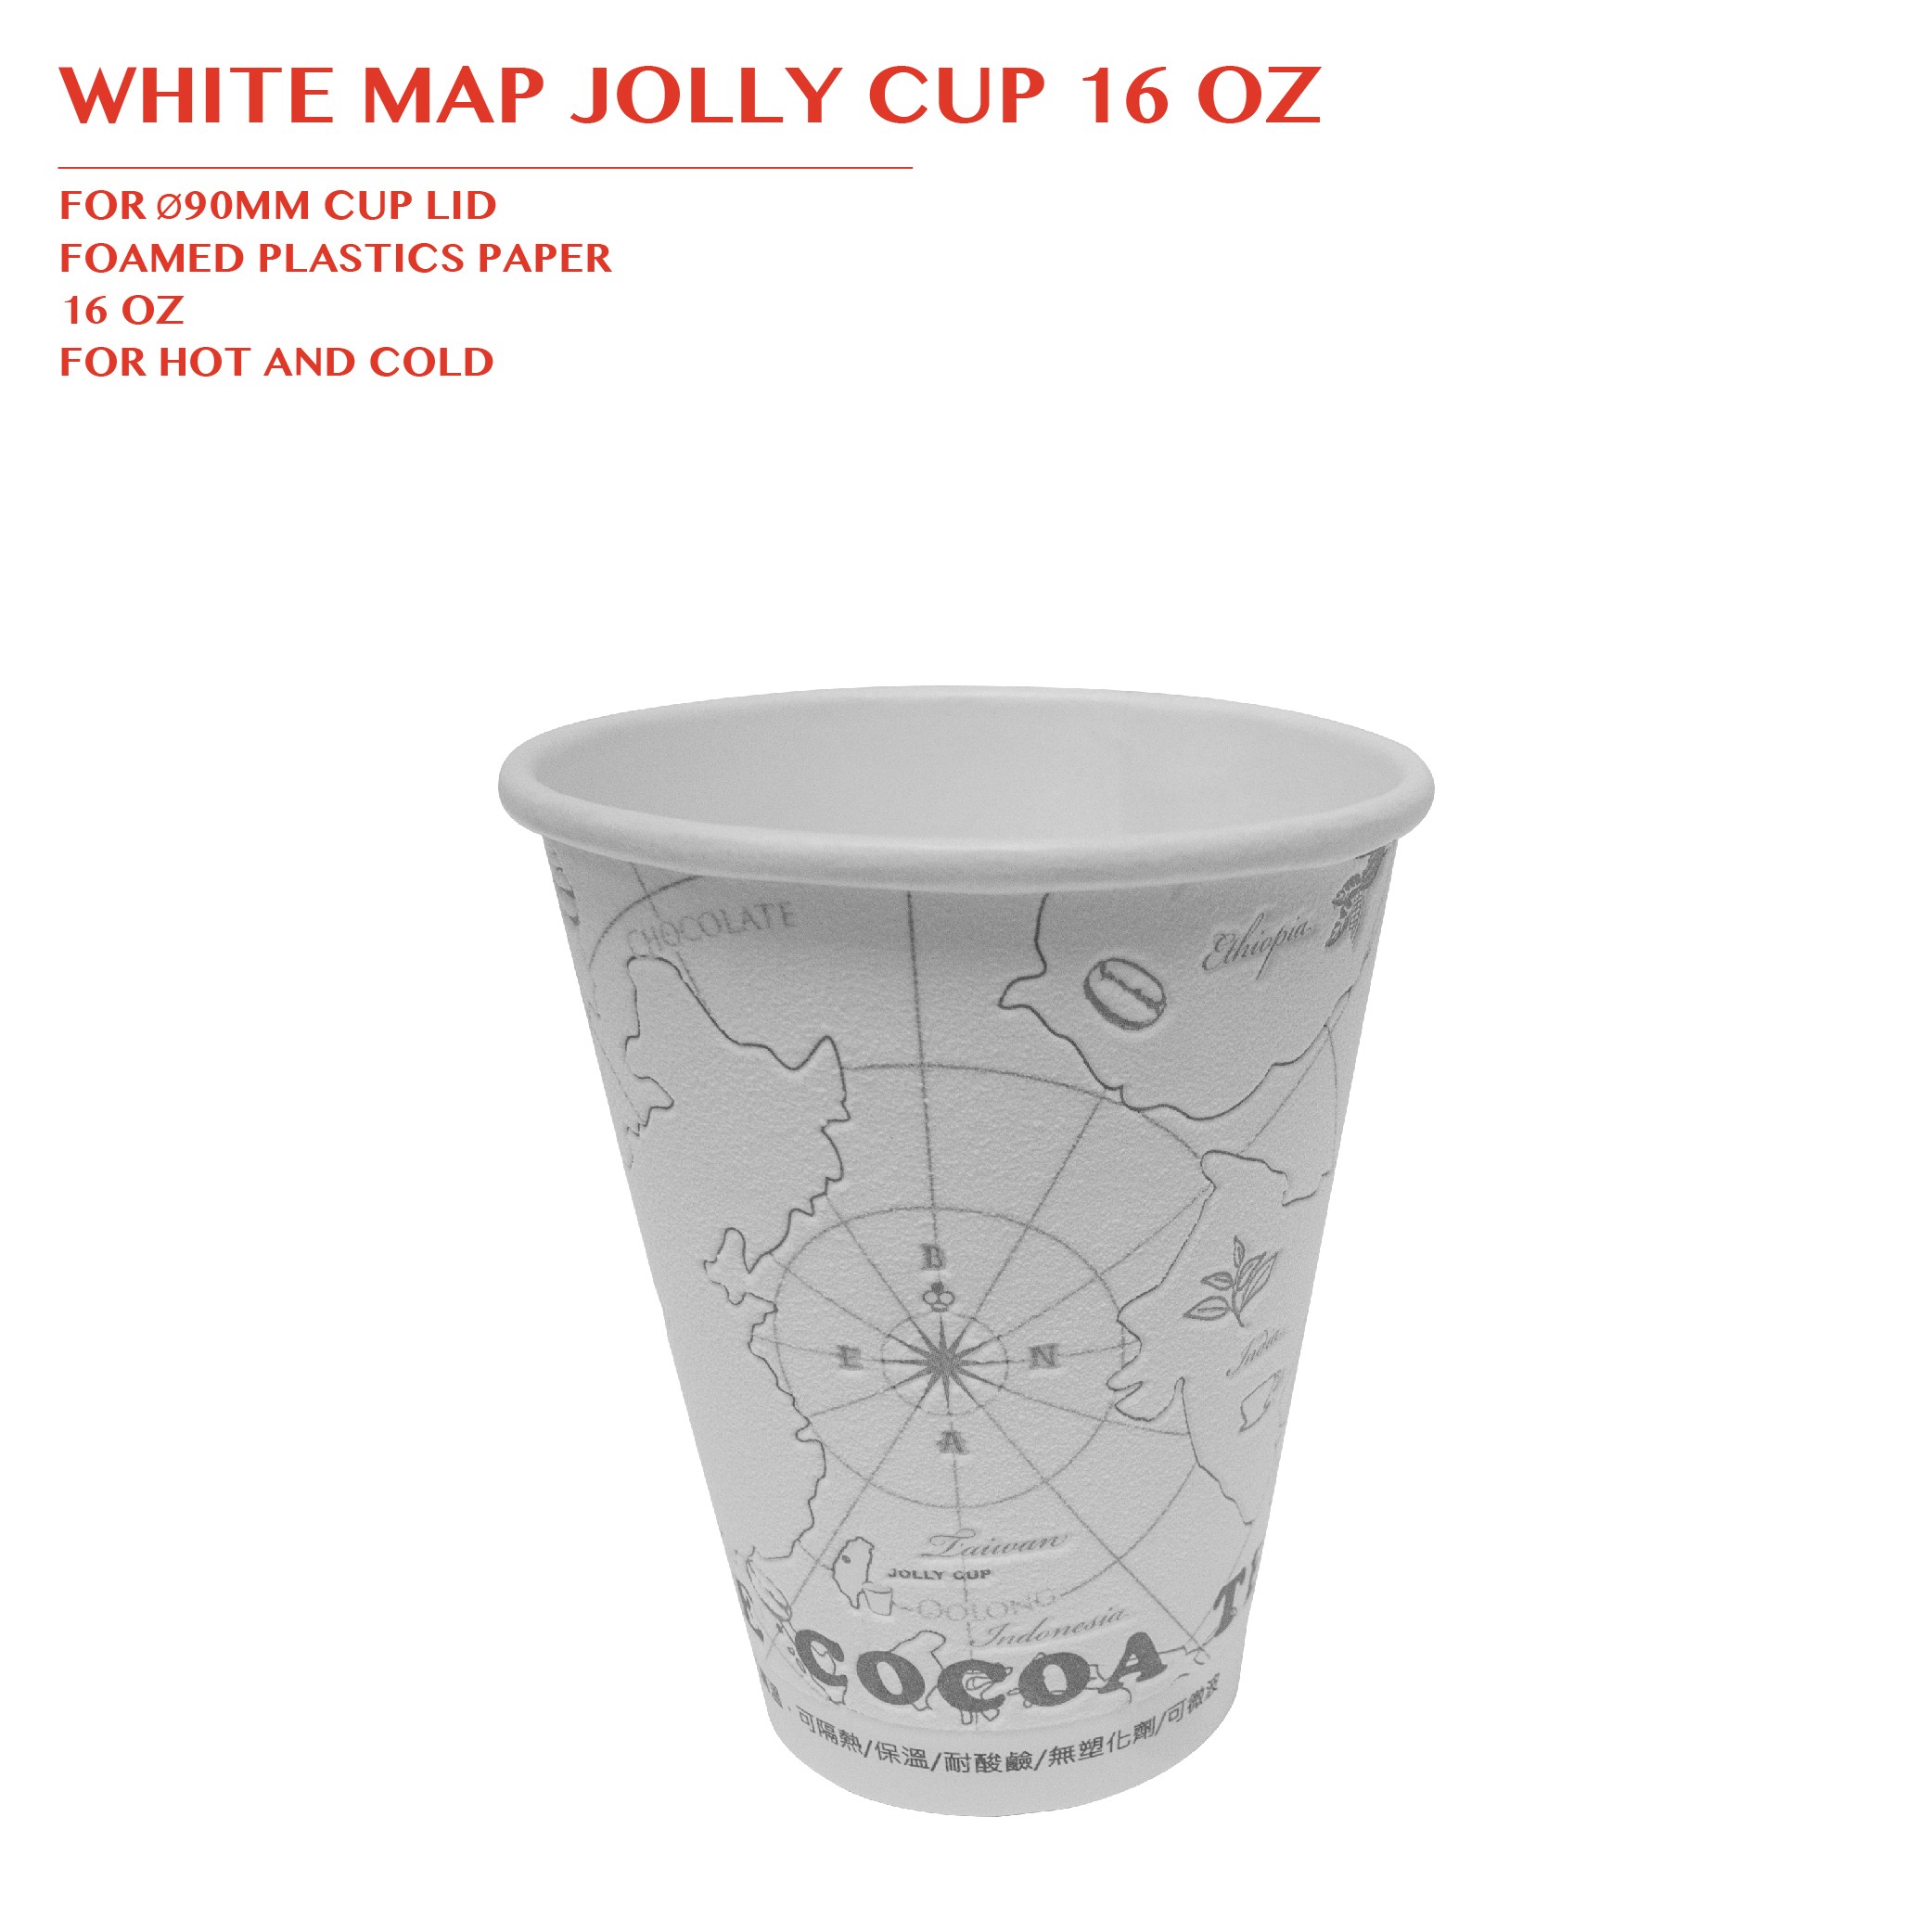 PRE-ORDER WHITE MAP JOLLY CUP 16 OZ PCS/CTN